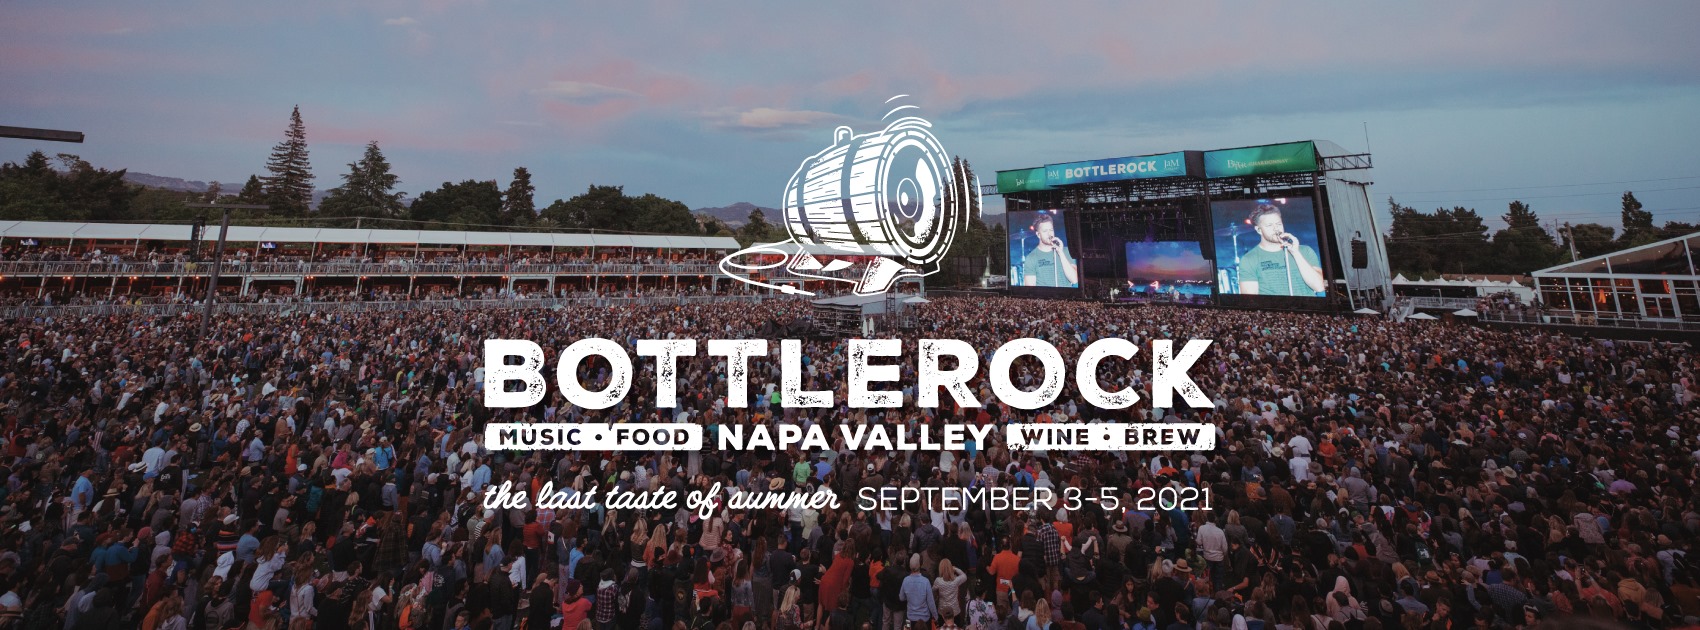 September 3-5, 2021 BottleRock, Napa